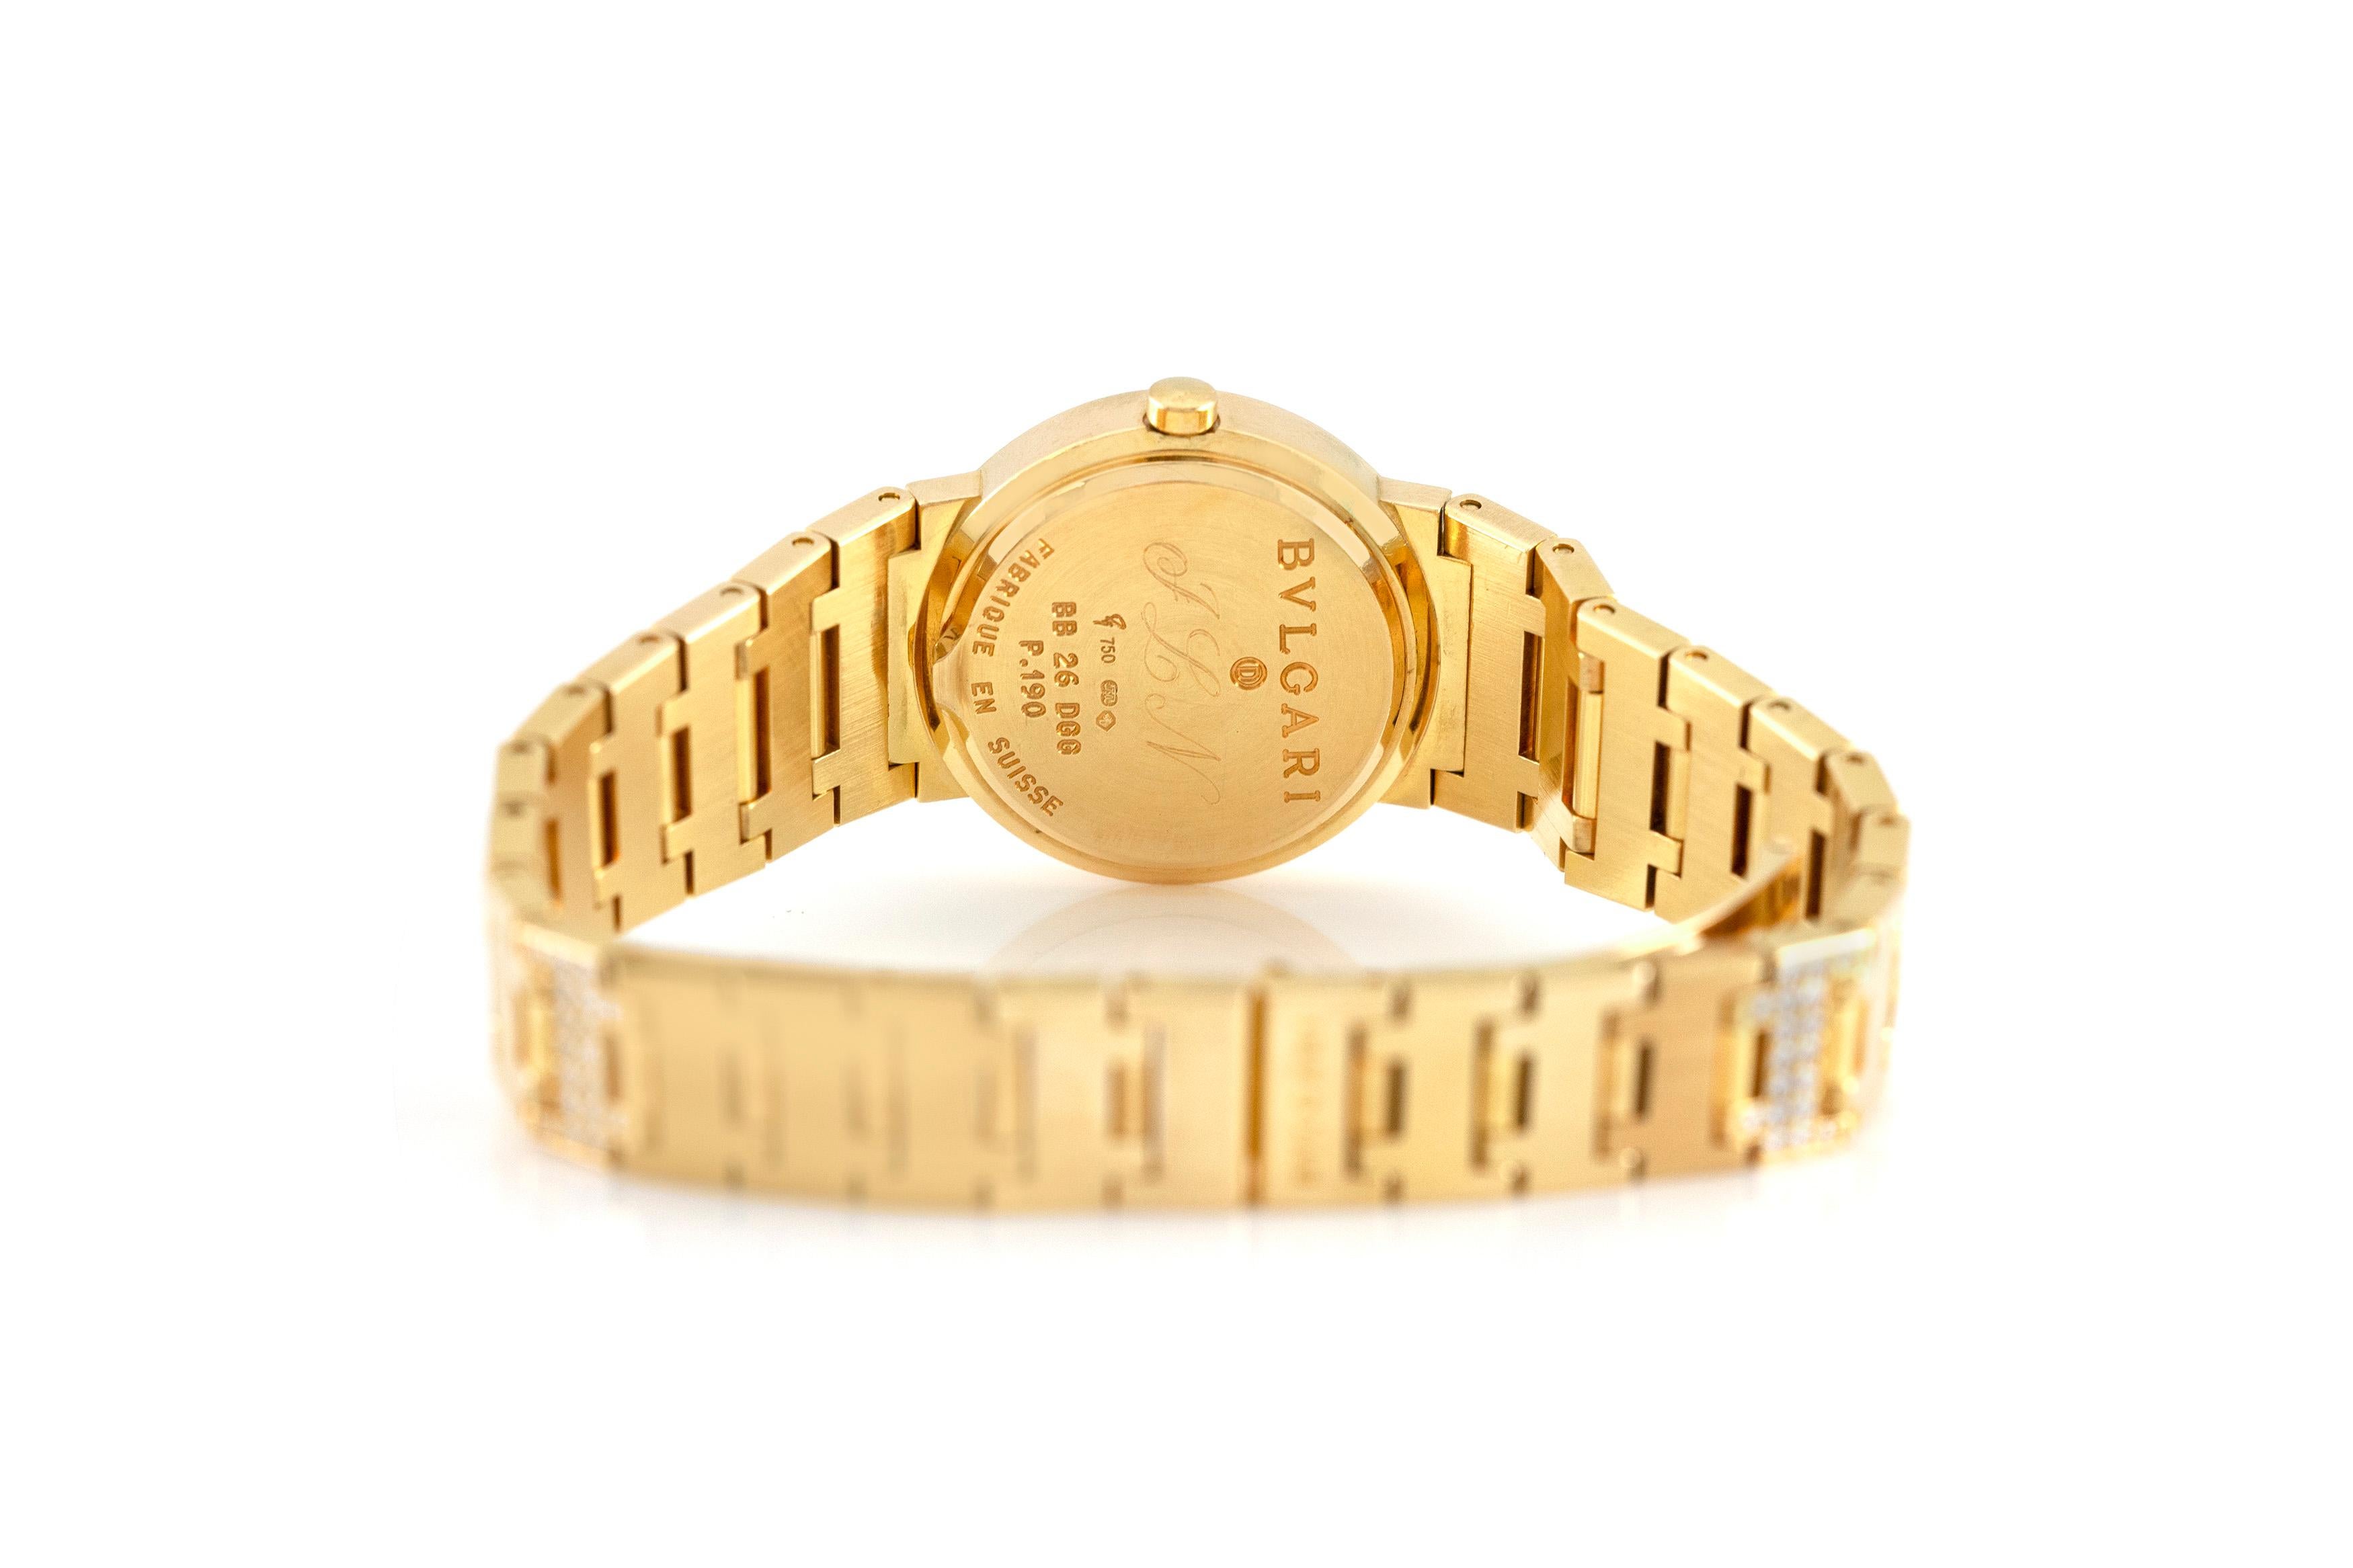 Die Uhr ist fein in 18k Gelbgold mit Diamanten gefertigt.

Zeichen von BVLGARI